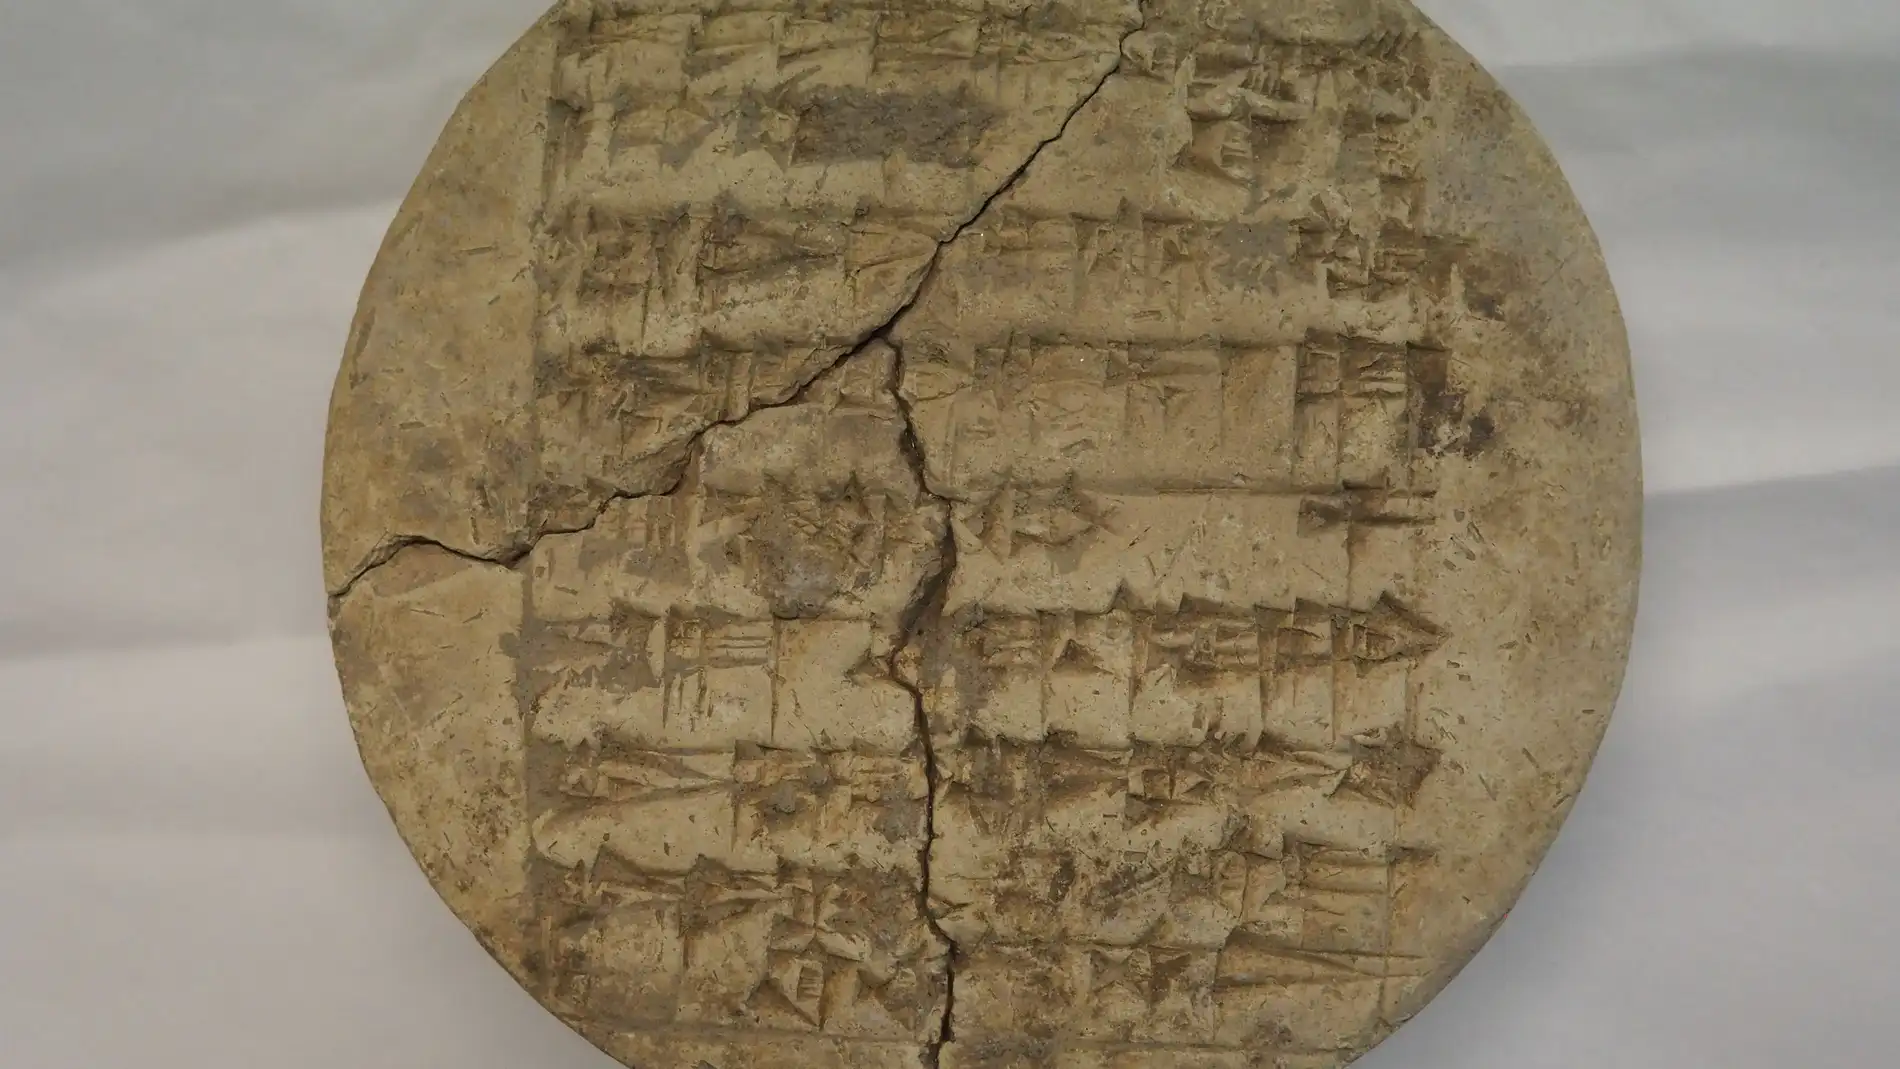 Hallan en un manuscrito del Museo Sefardi de Toledo una nueva inscripcion cuneiforme en lengua sumeria